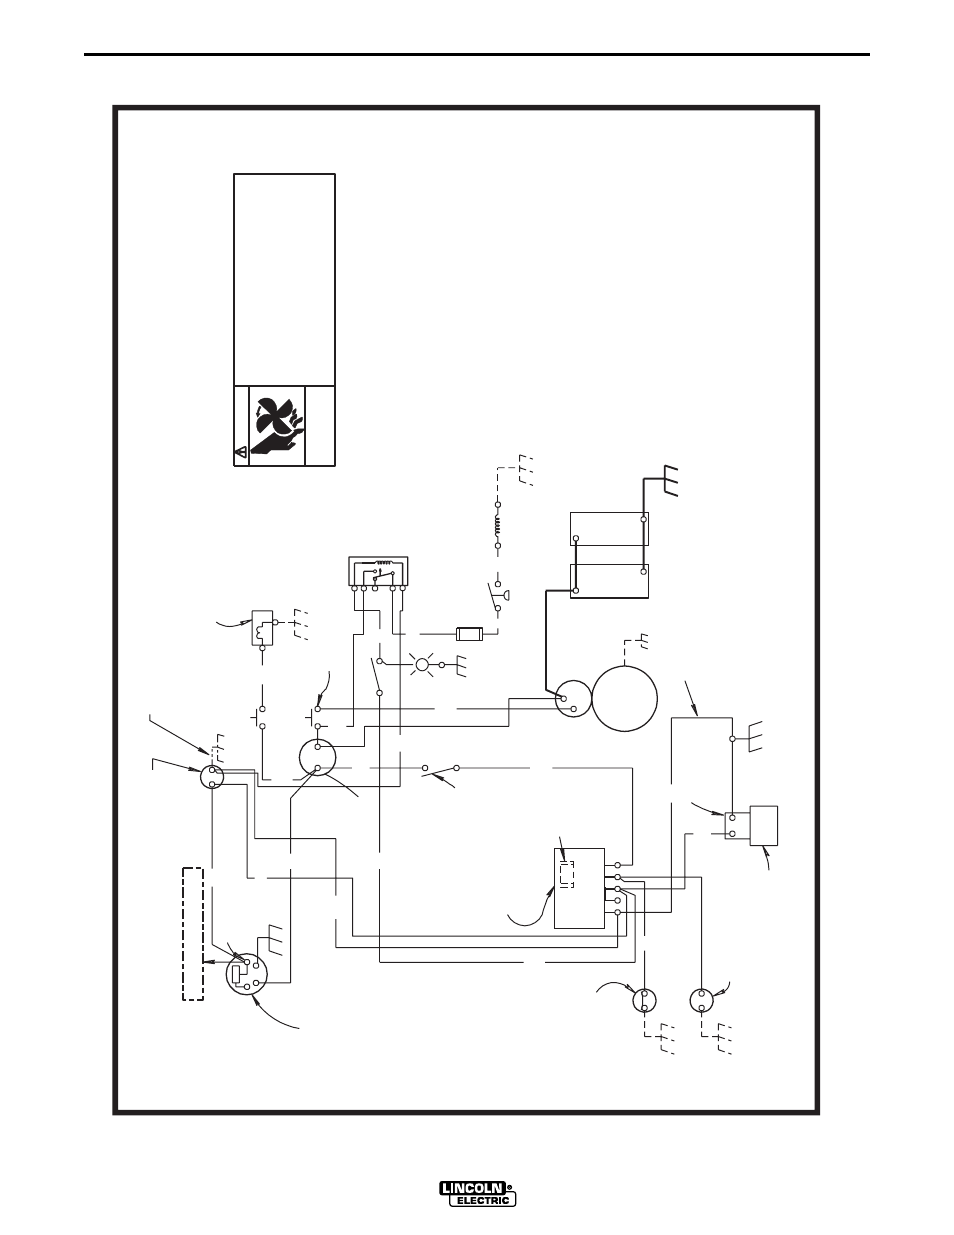 Wiring diagrams, Sae400 weld’n air, Engine wiring diagram - sae-400 weld’n air | Lincoln Electric IM581 SAE400 User Manual | Page 29 / 34